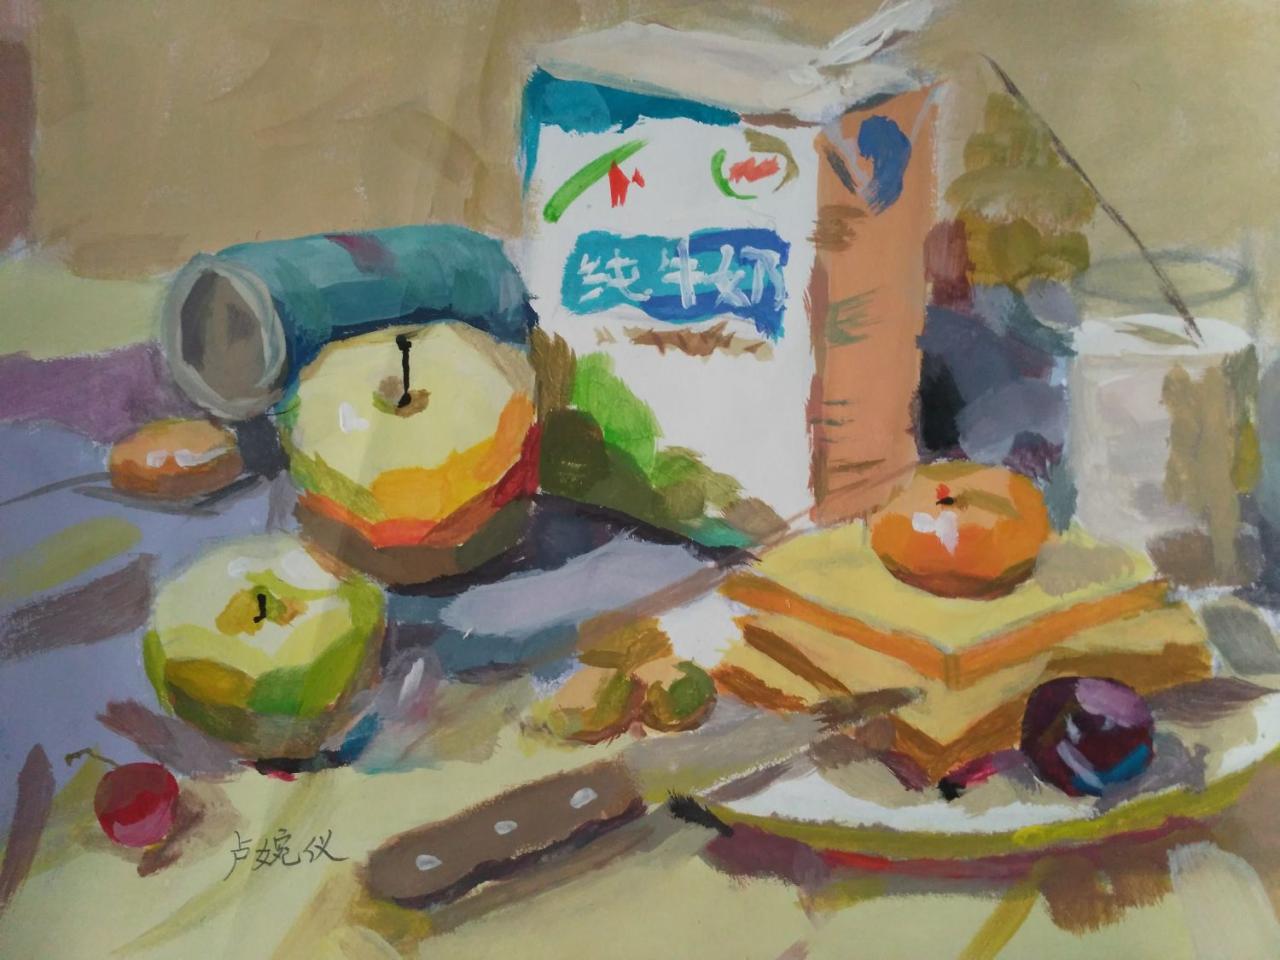 水粉静物 伊利酸牛奶、苹果、面包片、水果刀、盘子等 卢婉仪画